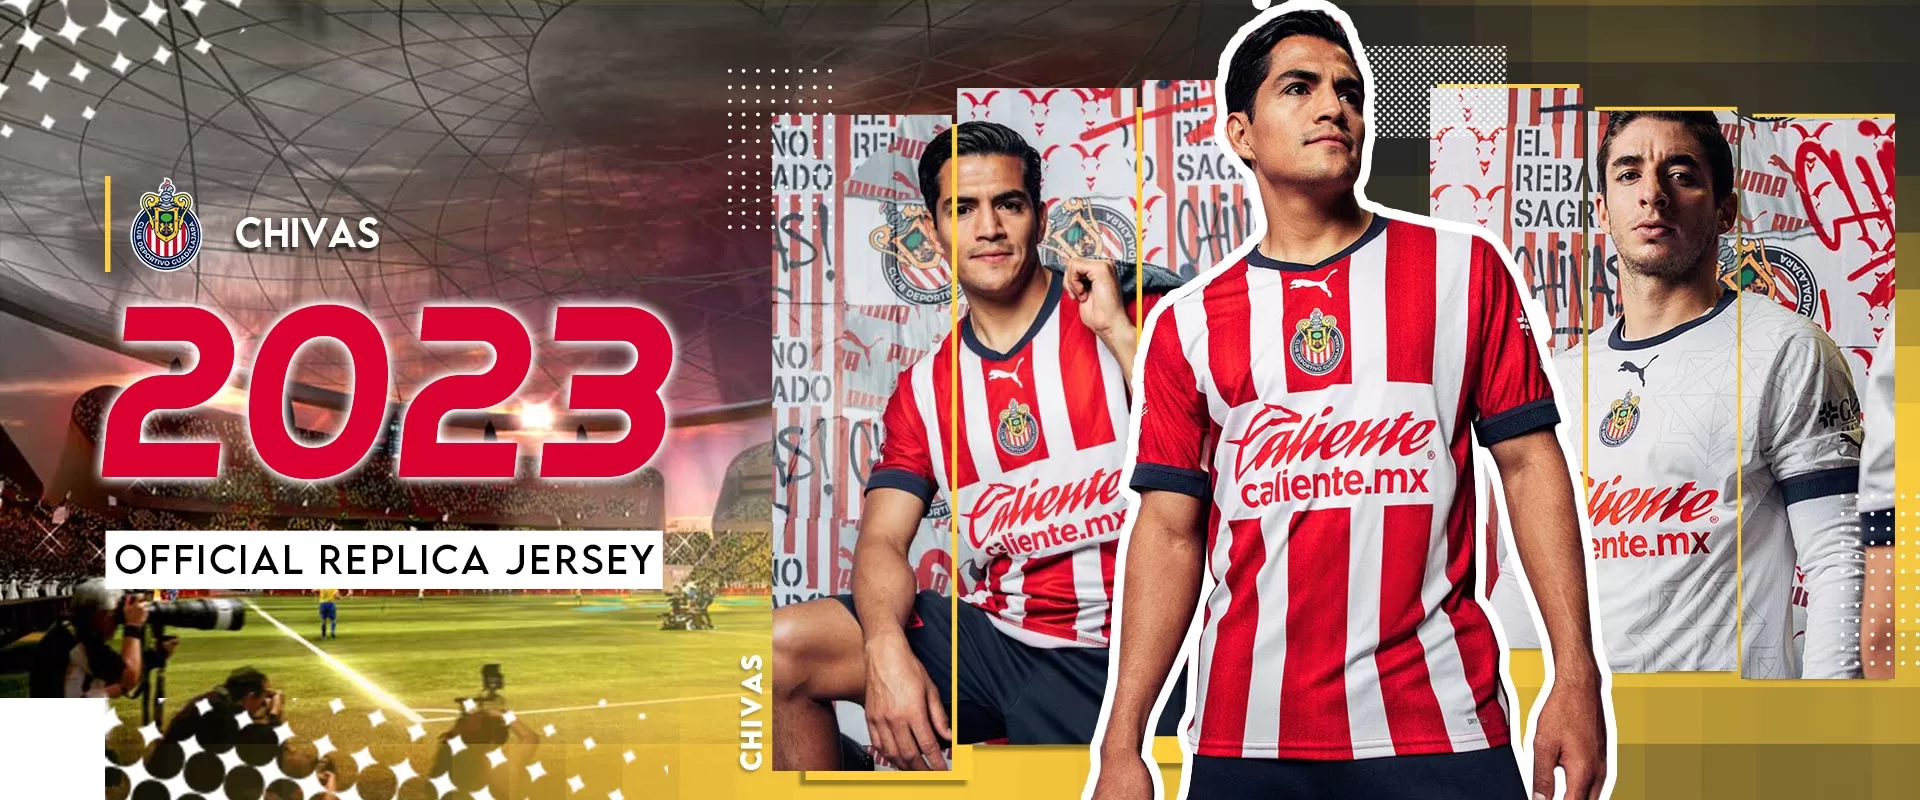 Chivas De Guadalajara Officially Licensed Soccer T-shirt 